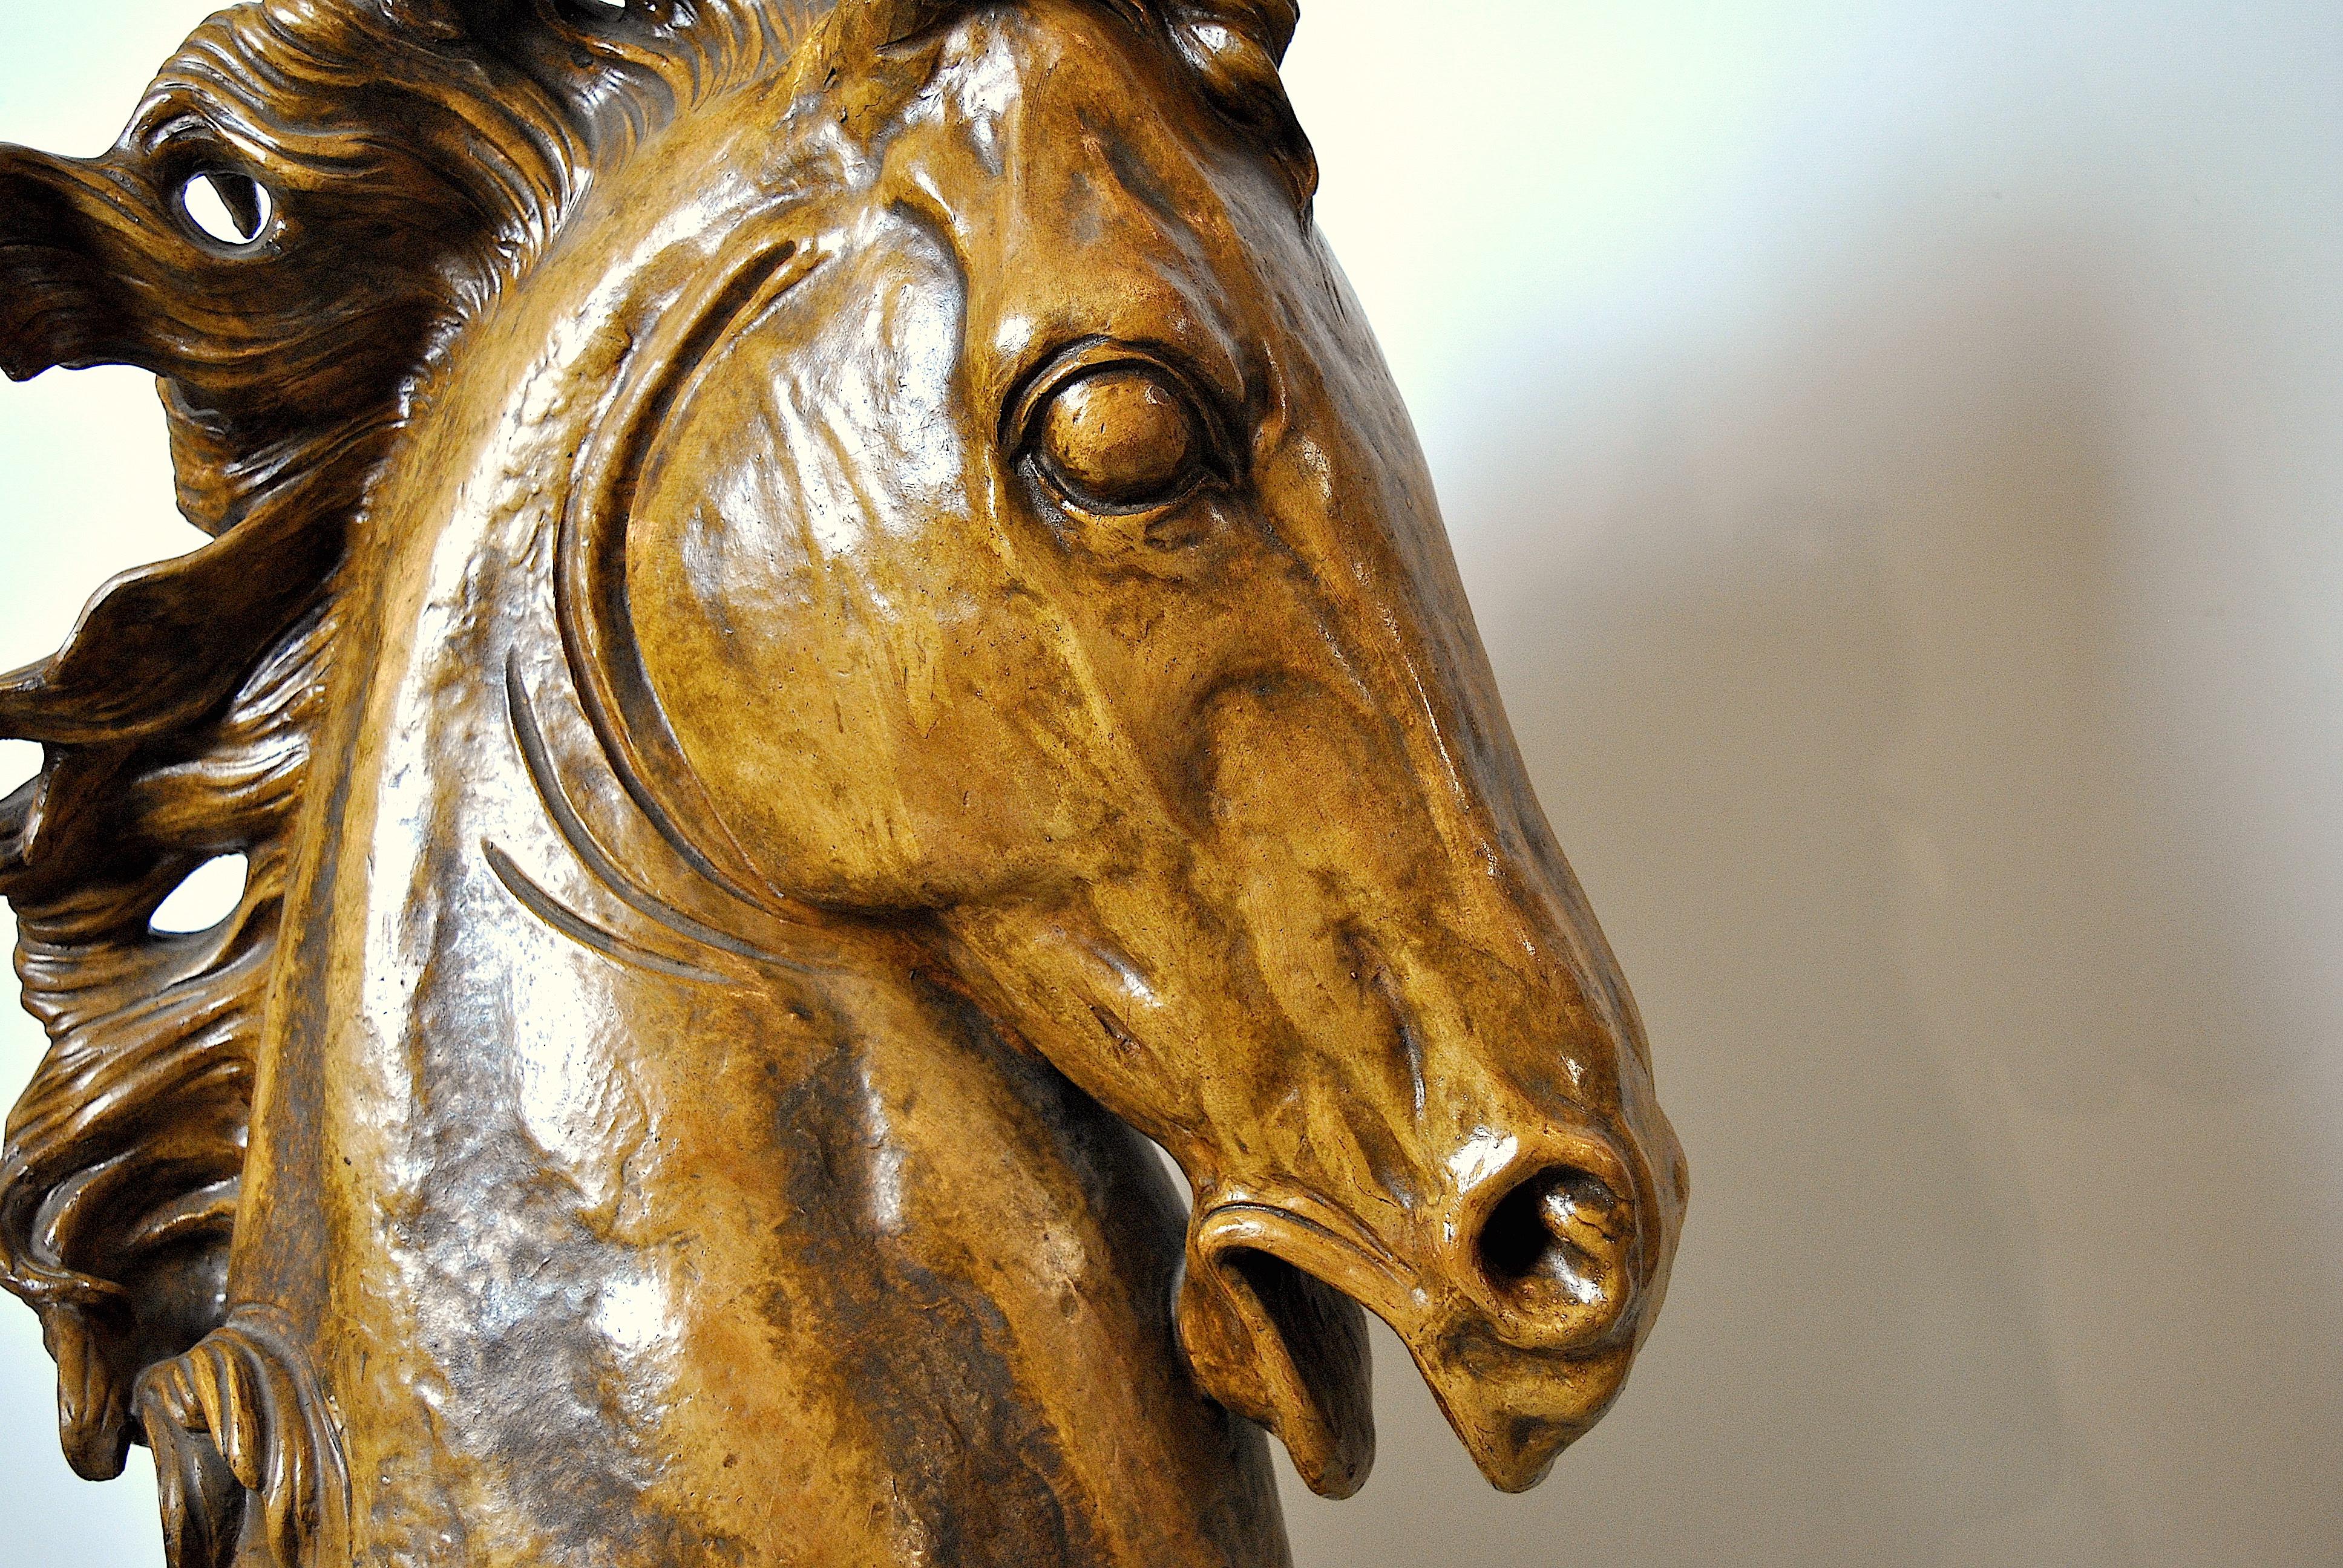 Mid-20th Century Horse ceramic sculpture 1950s Italian manufacture